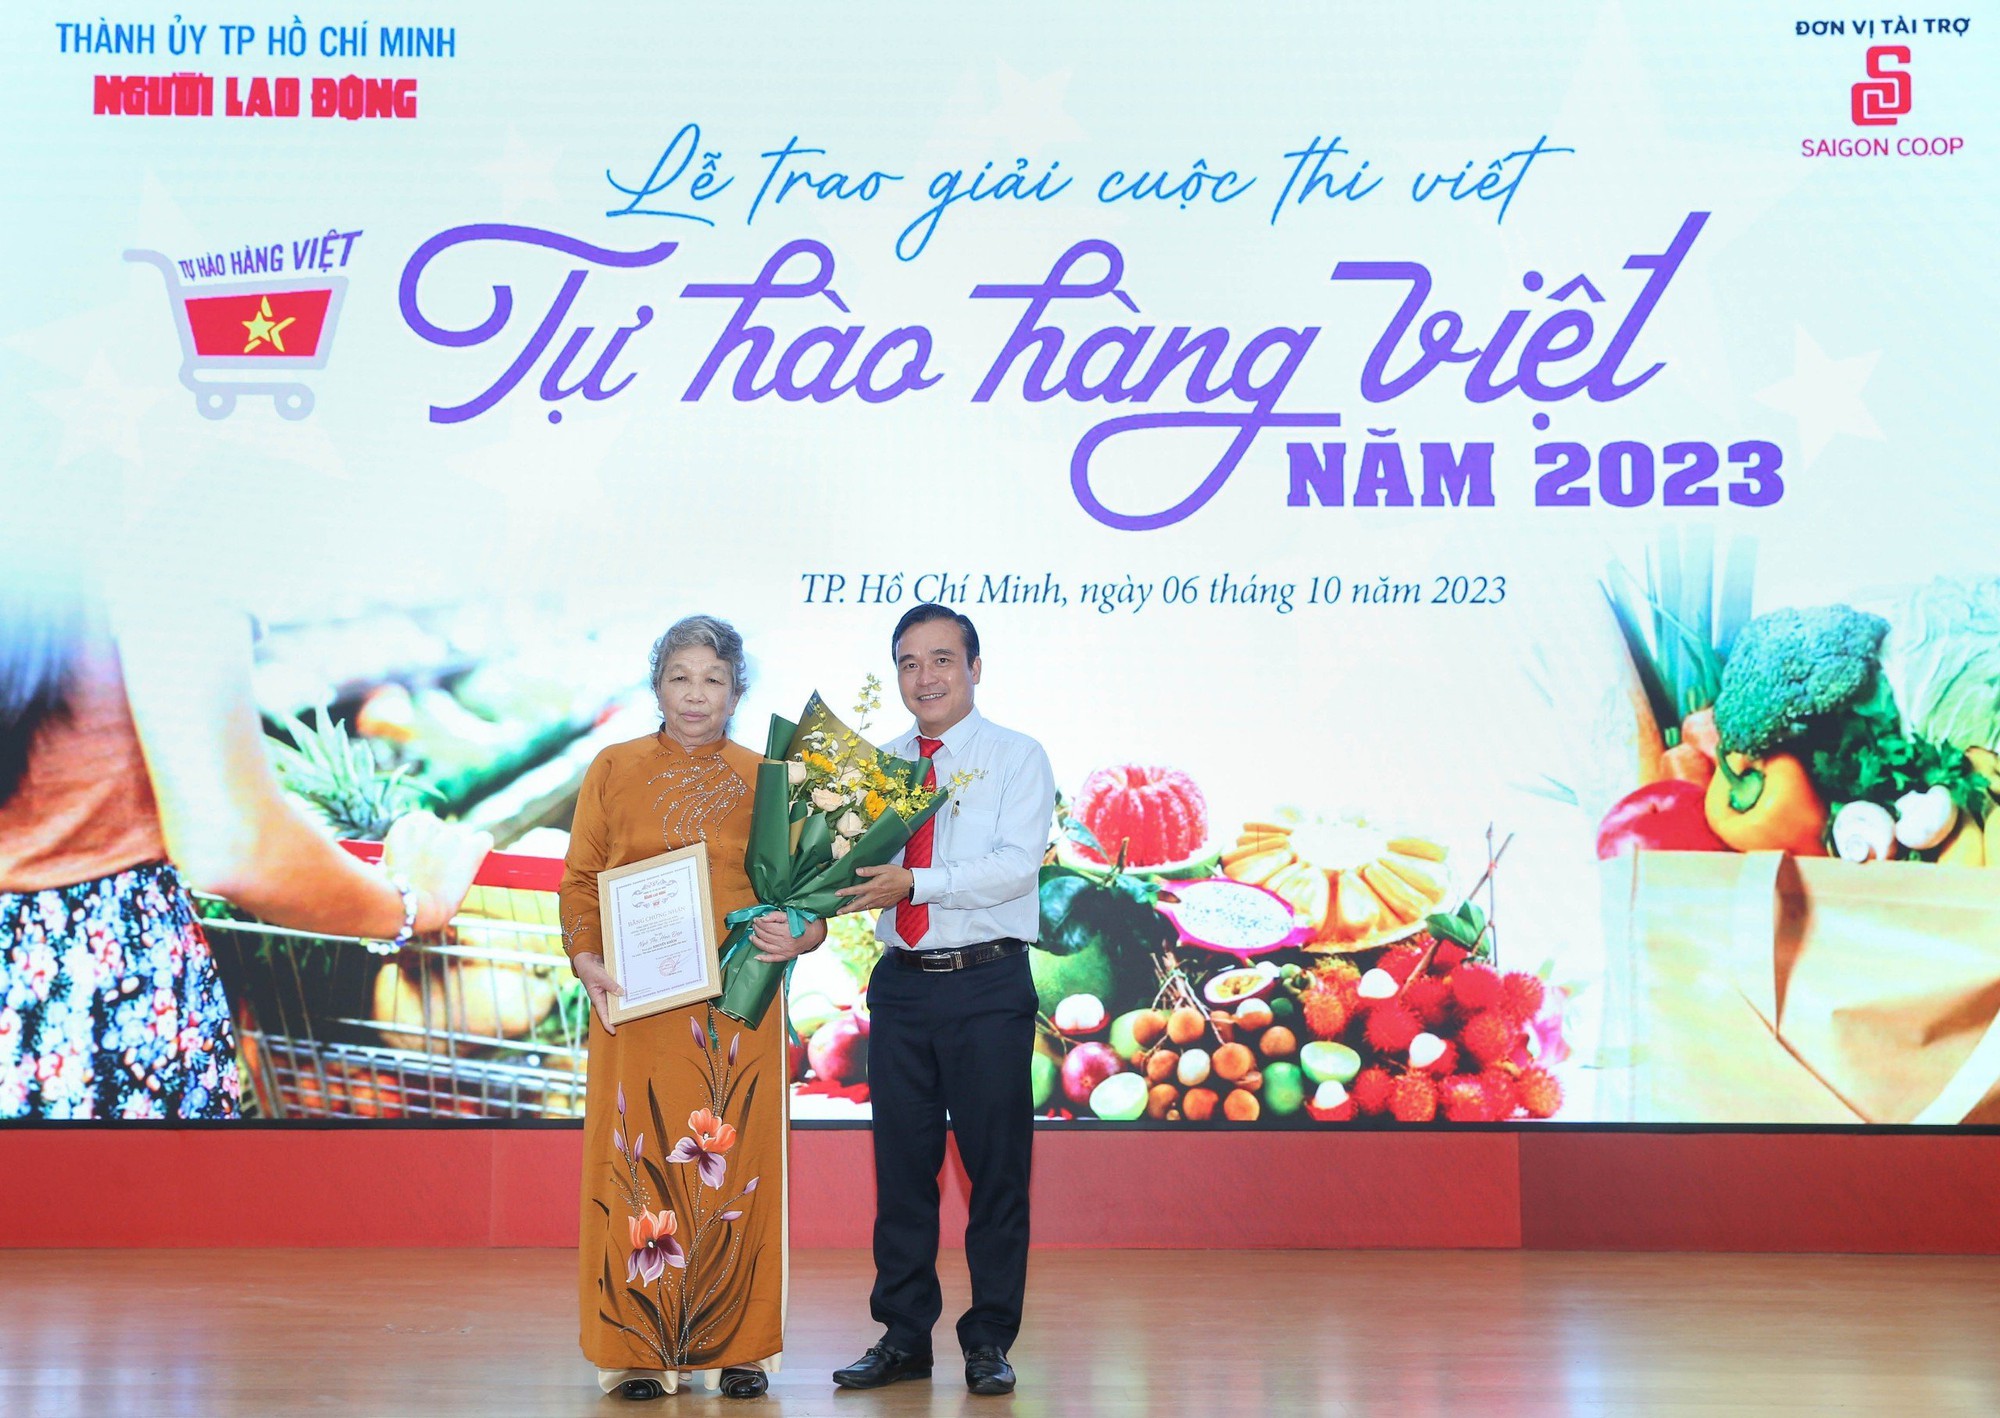 Nhớ lần dìu ngoại đi siêu thị đoạt giải nhất cuộc thi “Tự hào hàng Việt” - Ảnh 8.